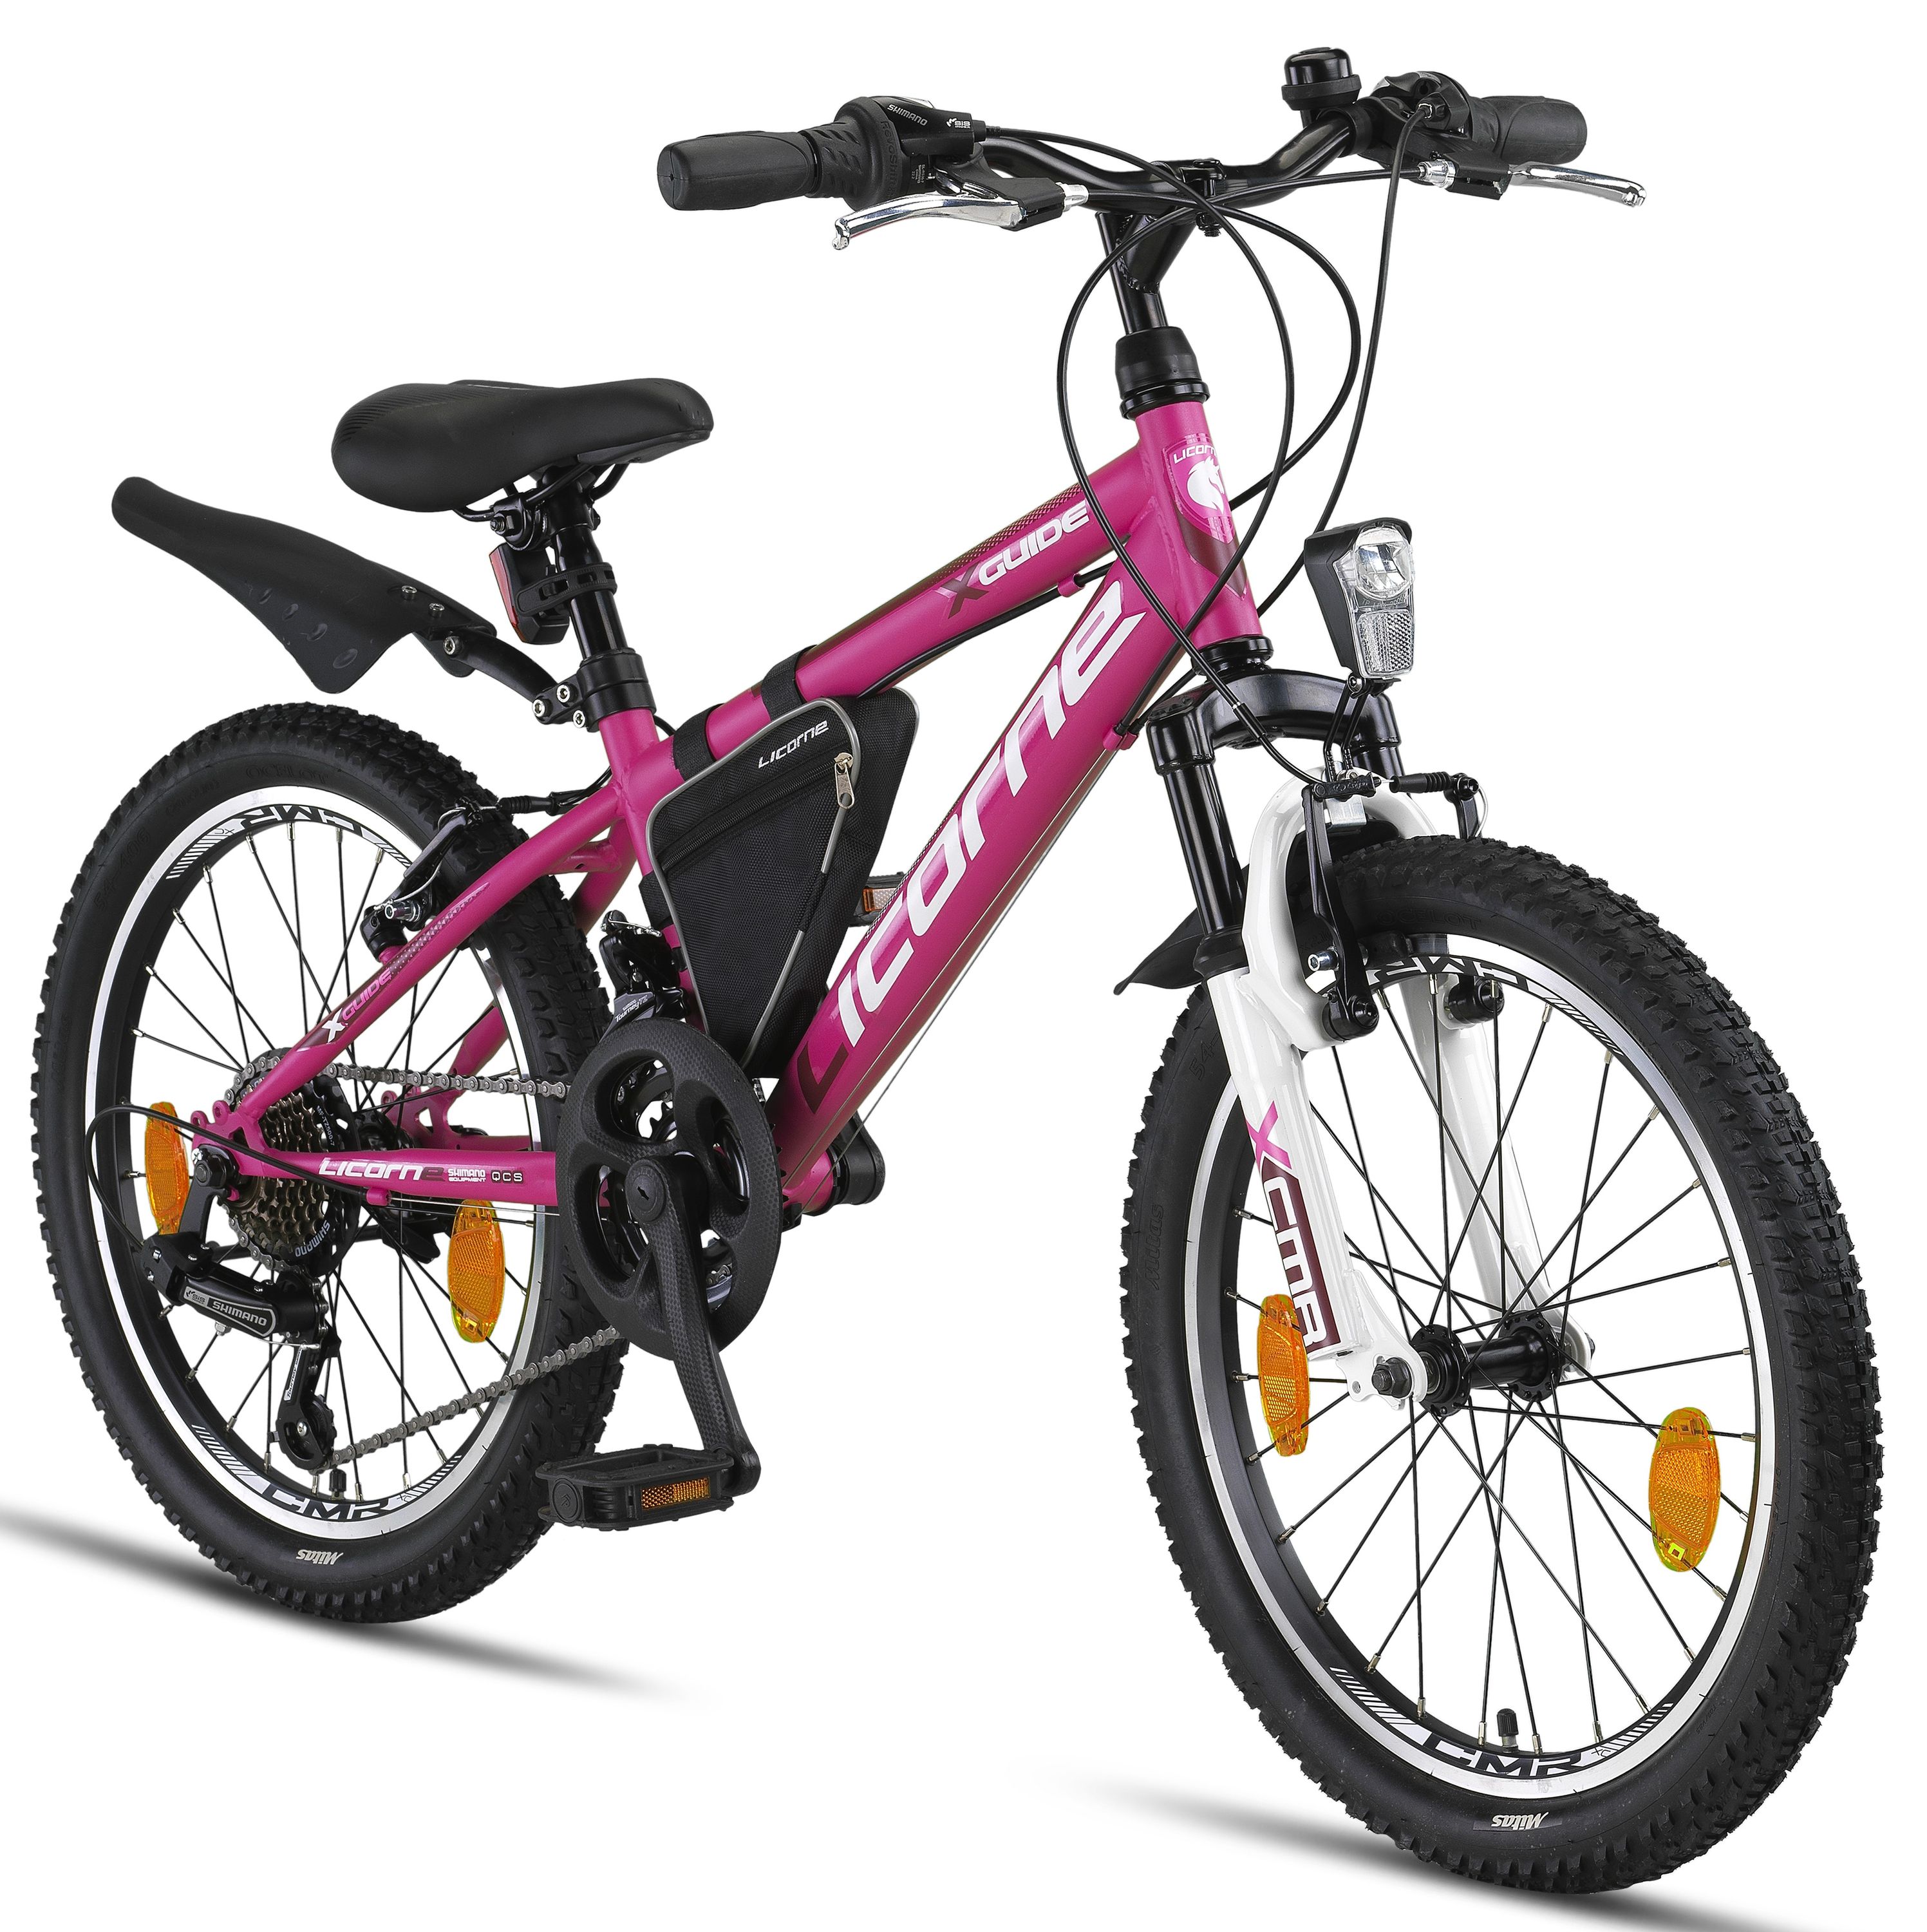 Licorne Bike Guide Premium mountain bike in 20, 24 e 26 pollici - bici per ragazze, ragazzi, uomini e donne - cambio Shimano a 21 velocità, bici per bambini, ragazzi